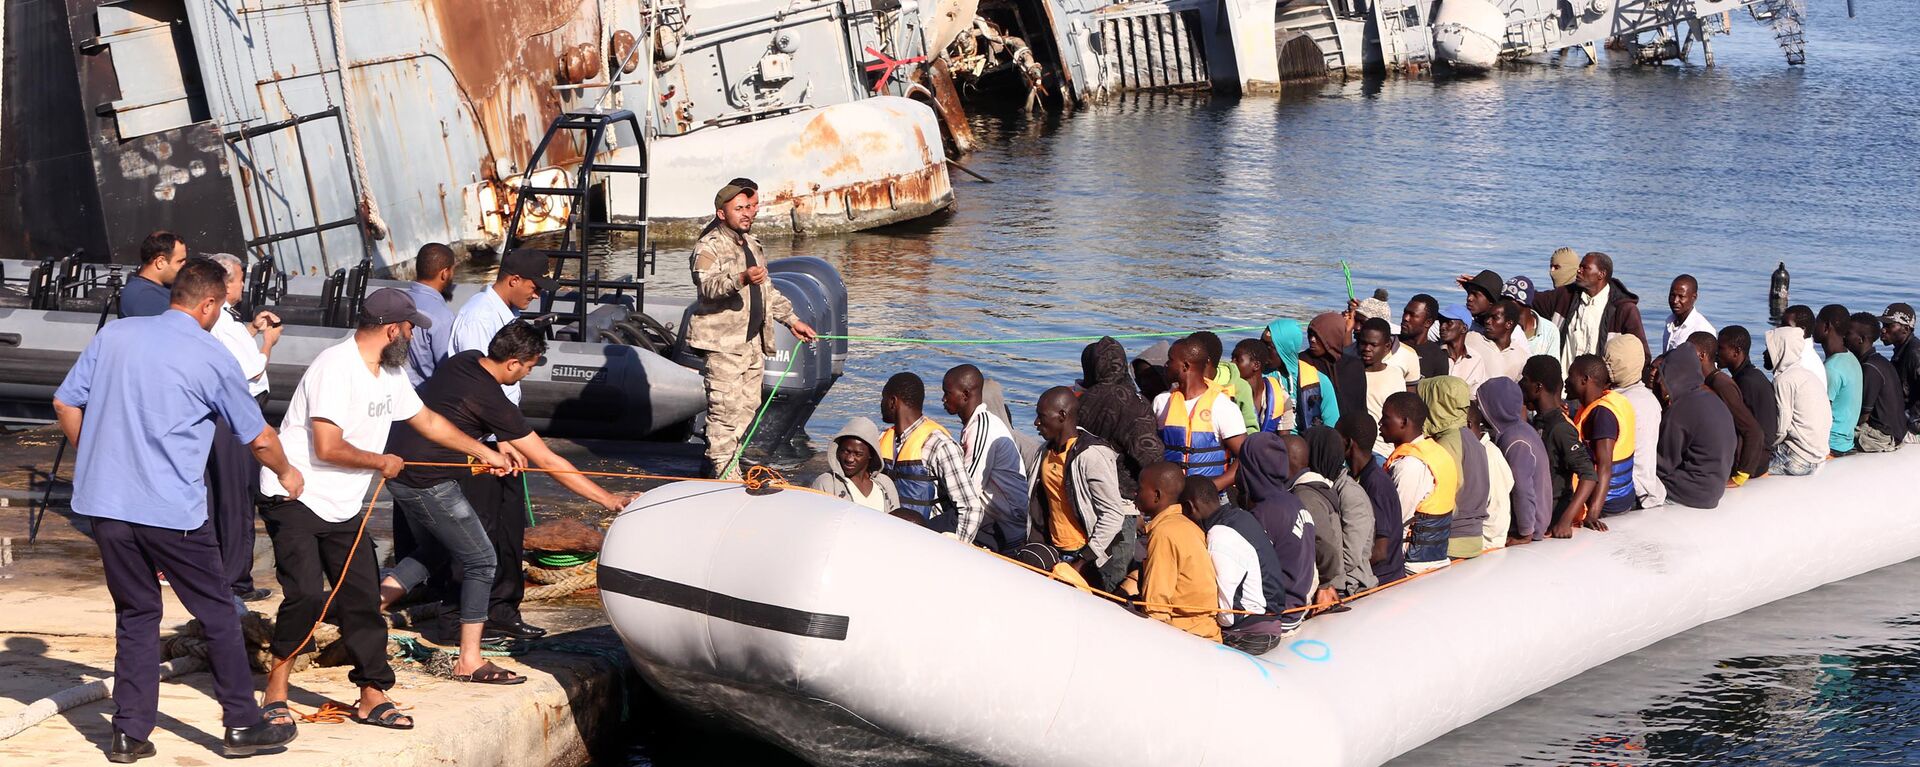  خفر السواحل الليبي يقوم بسحب قارب يحمل مهاجرين أفارقة، تم إنقاذهم أثناء محاولتهم الوصول إلى أوروبا بطريقة غير شرعية، في قاعدة بحرية بالقرب من العاصمة طرابلس في 29 سبتمبر/ أيلول 2015. - سبوتنيك عربي, 1920, 31.07.2023